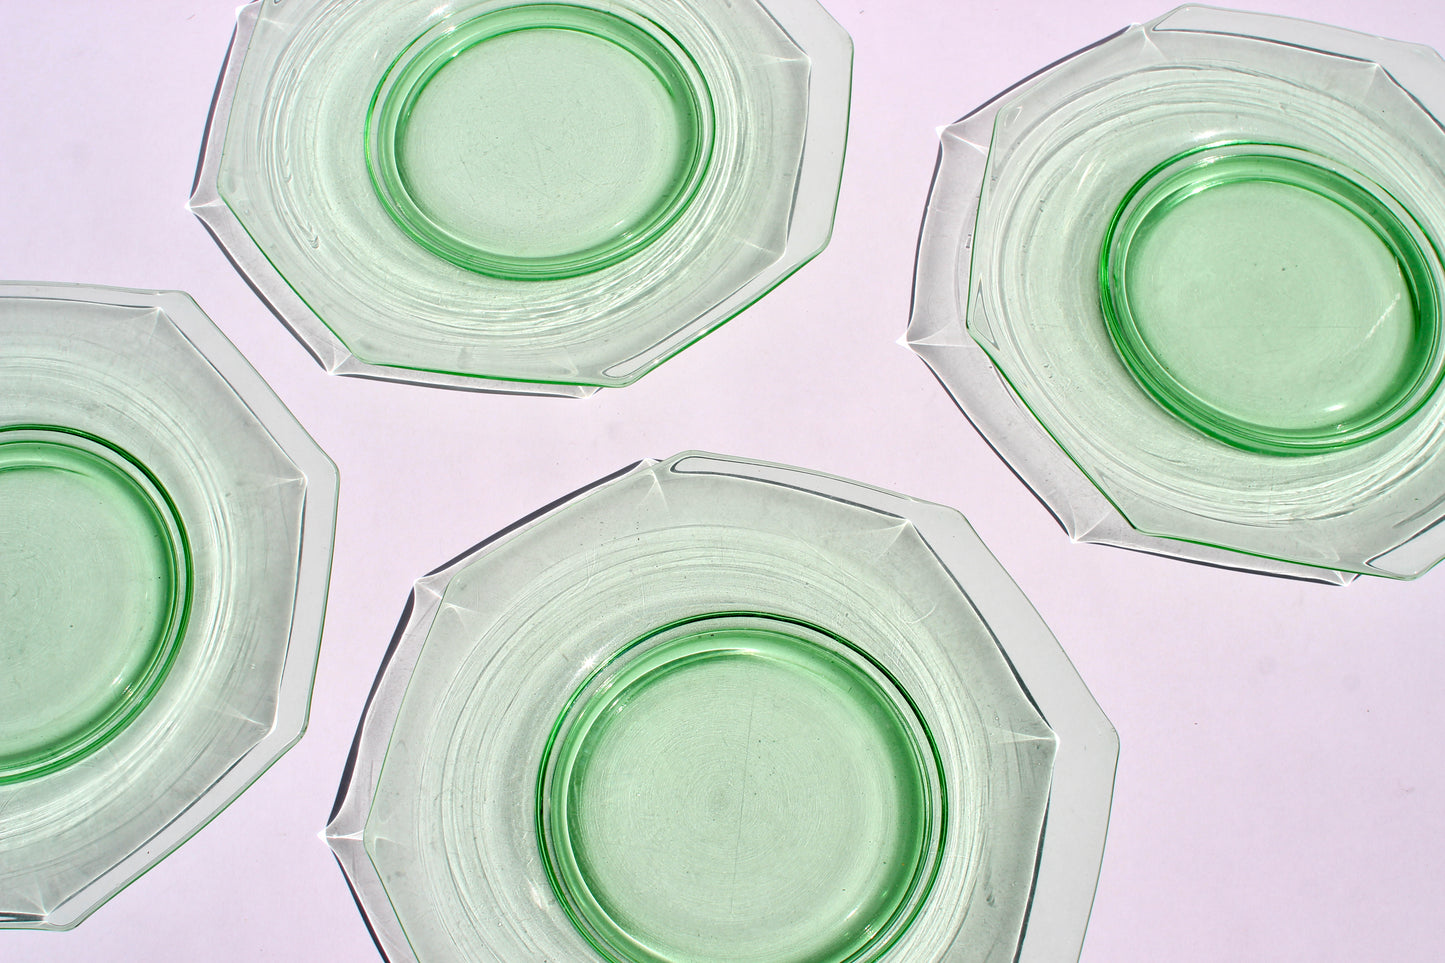 hexagon green glass plates (4)